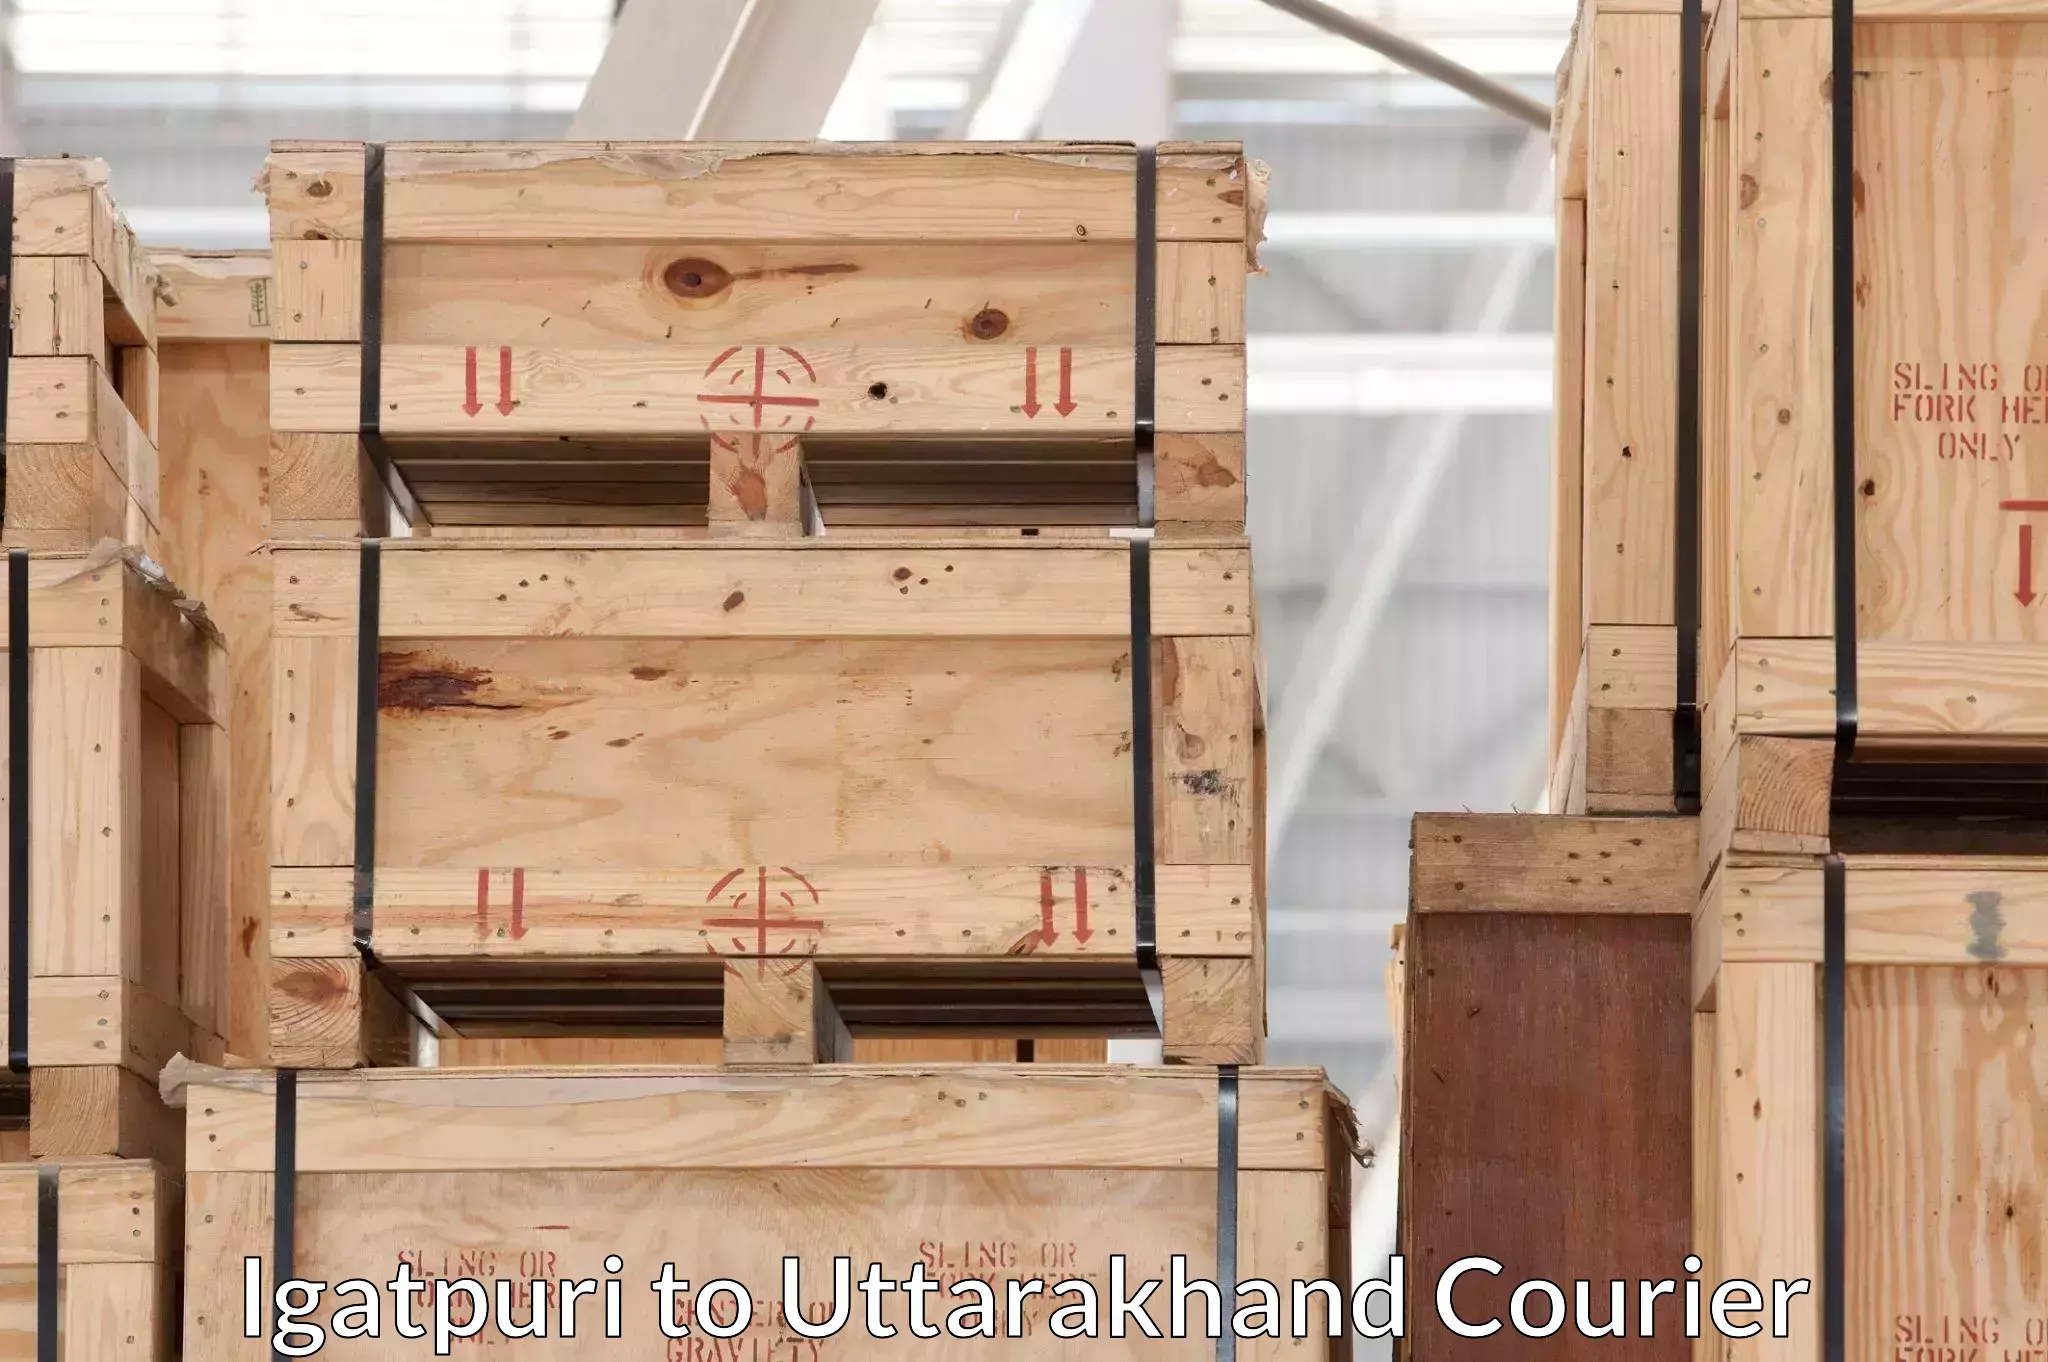 Furniture moving experts Igatpuri to Uttarakhand